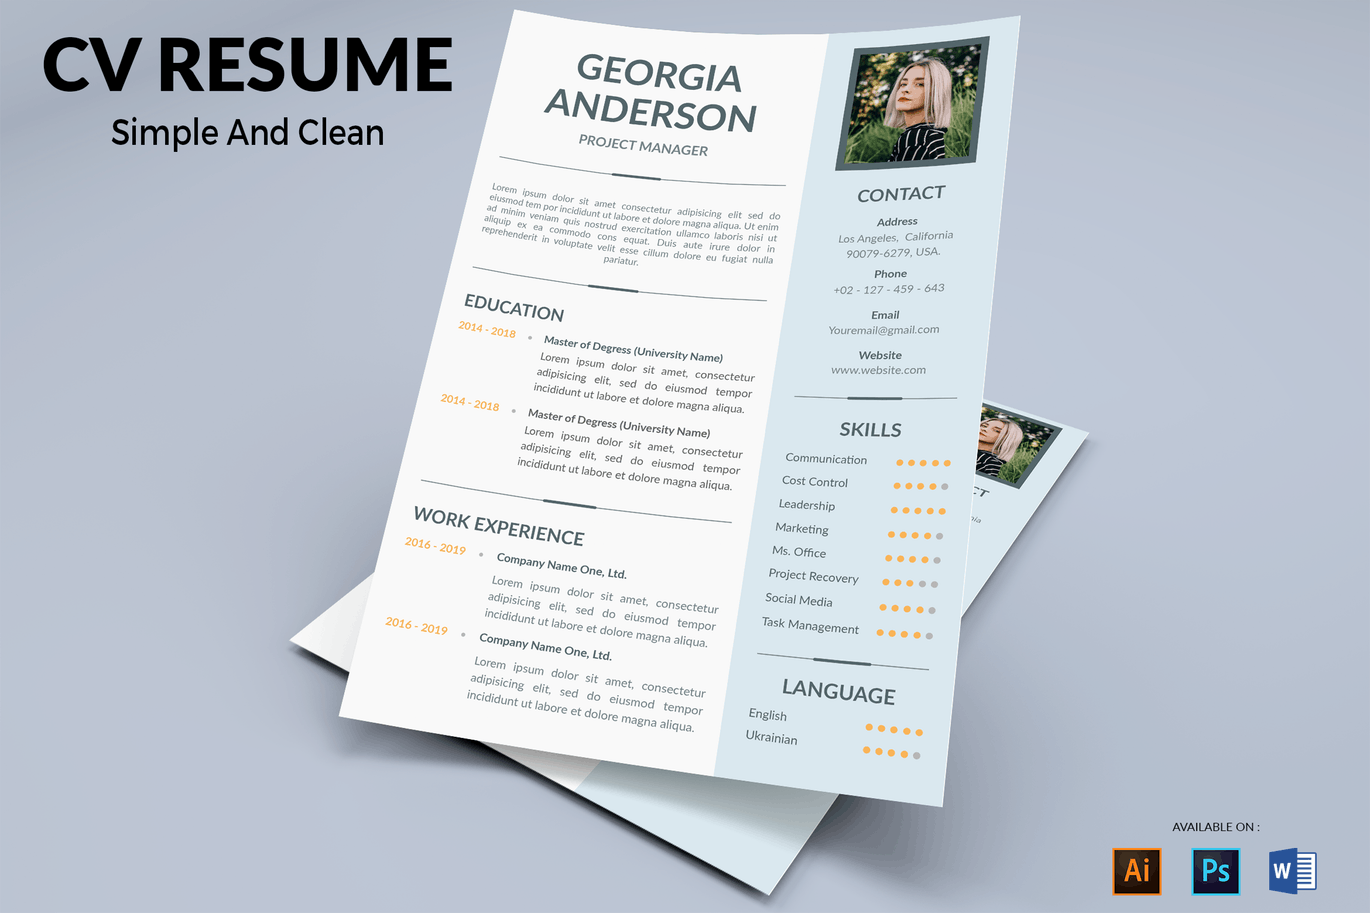 项目经理二合一专业蚂蚁素材精选简历模板 CV Resume Professional插图